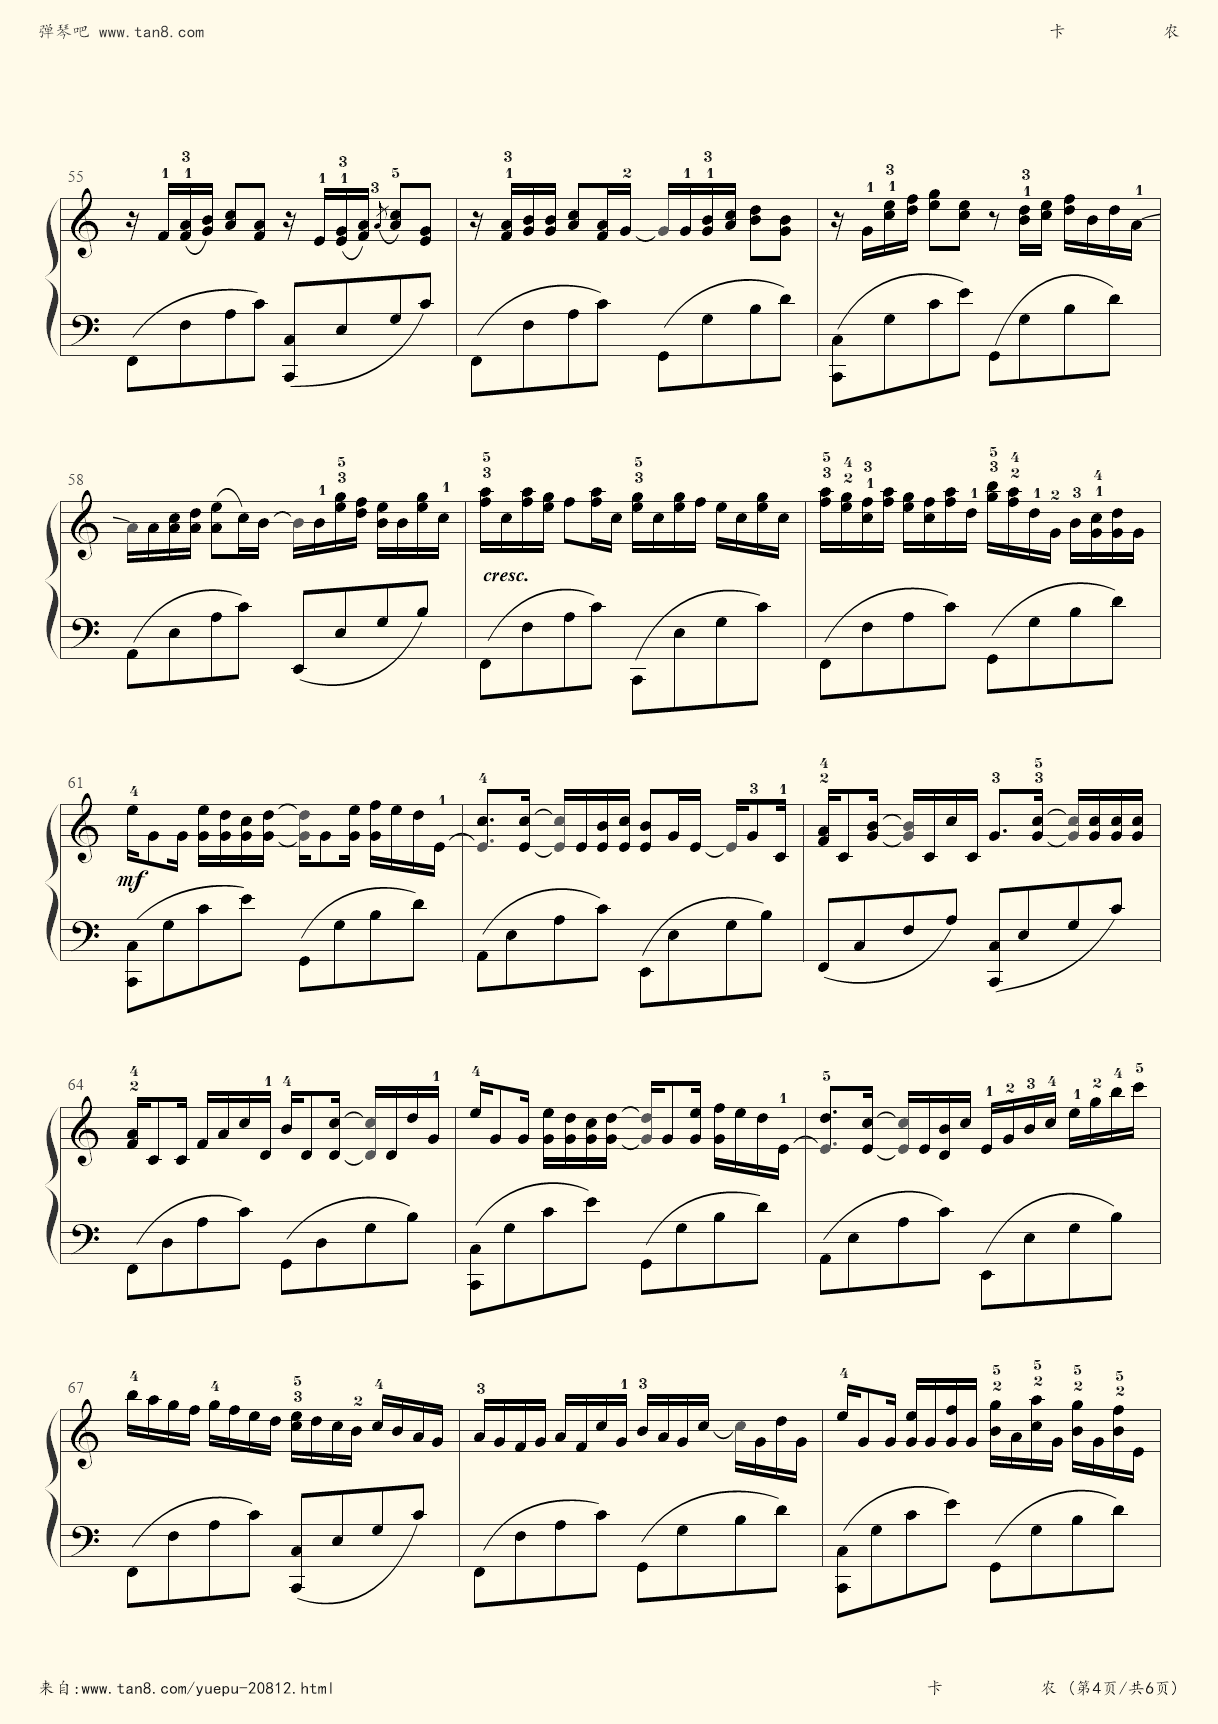 卡农钢琴曲曲谱c大调(卡农钢琴谱原版c大调)